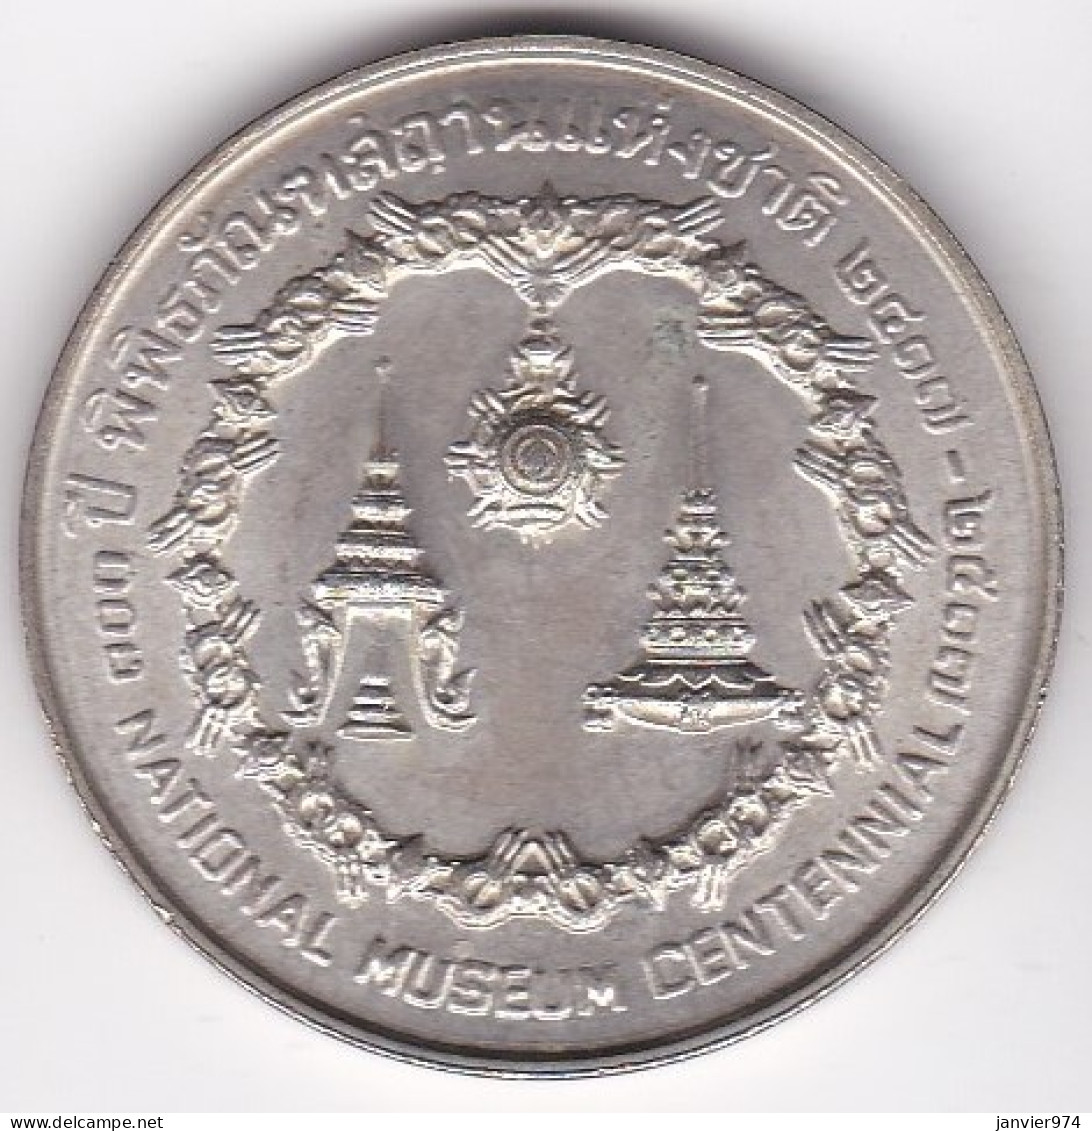 Thaïlande 50 Baht BE 2517 – 1974, Centenaire Du Musée National, En Argent , Y# 101 - Tailandia